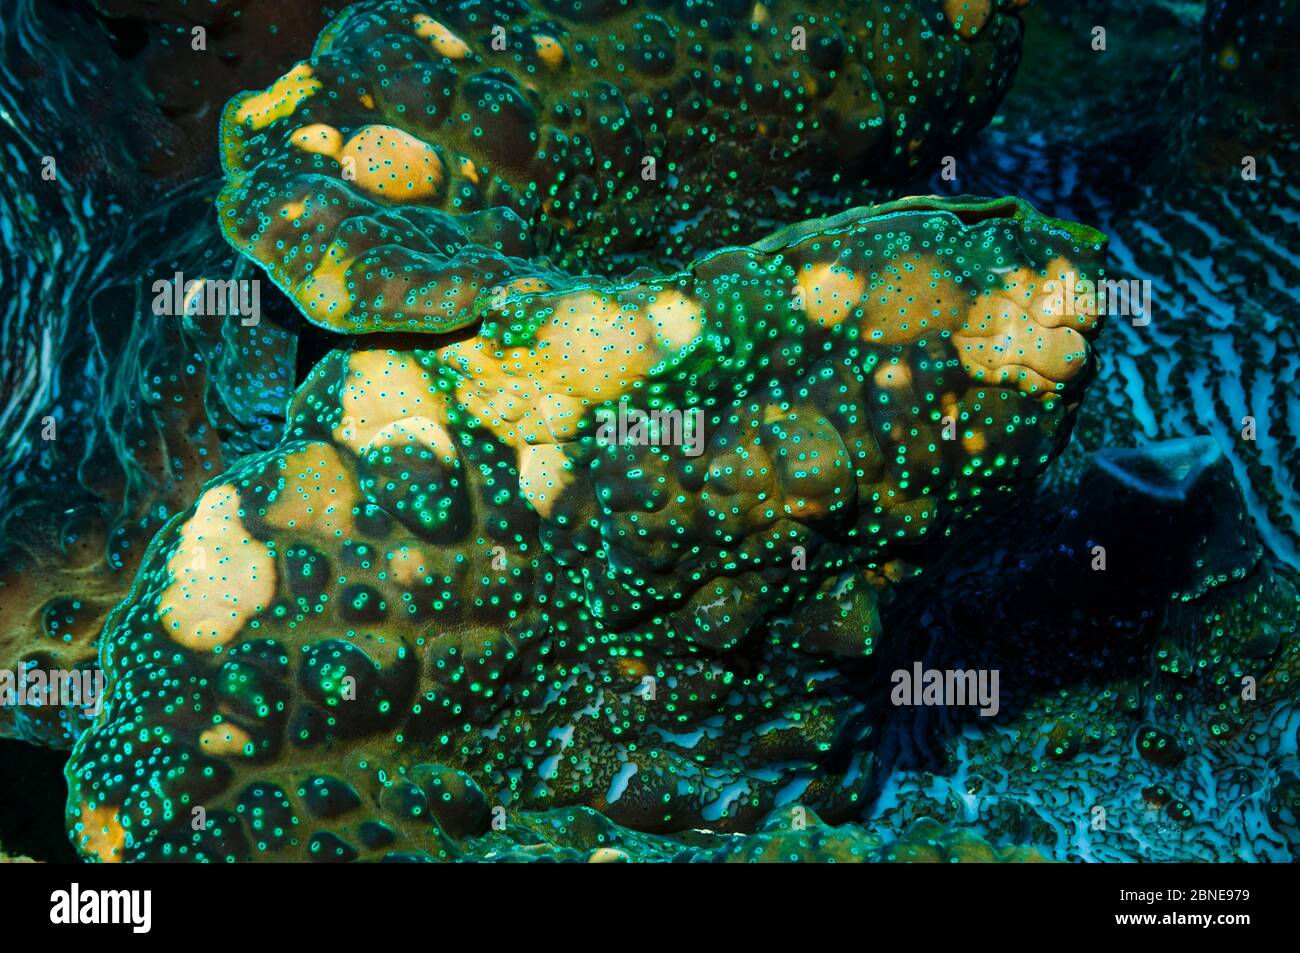 Detail des Mantels der Riesenmuschel (Tridacna gigas) Farben kommen von symbiotischen Zooxanthellae im Gewebe,. Indonesien. Stockfoto